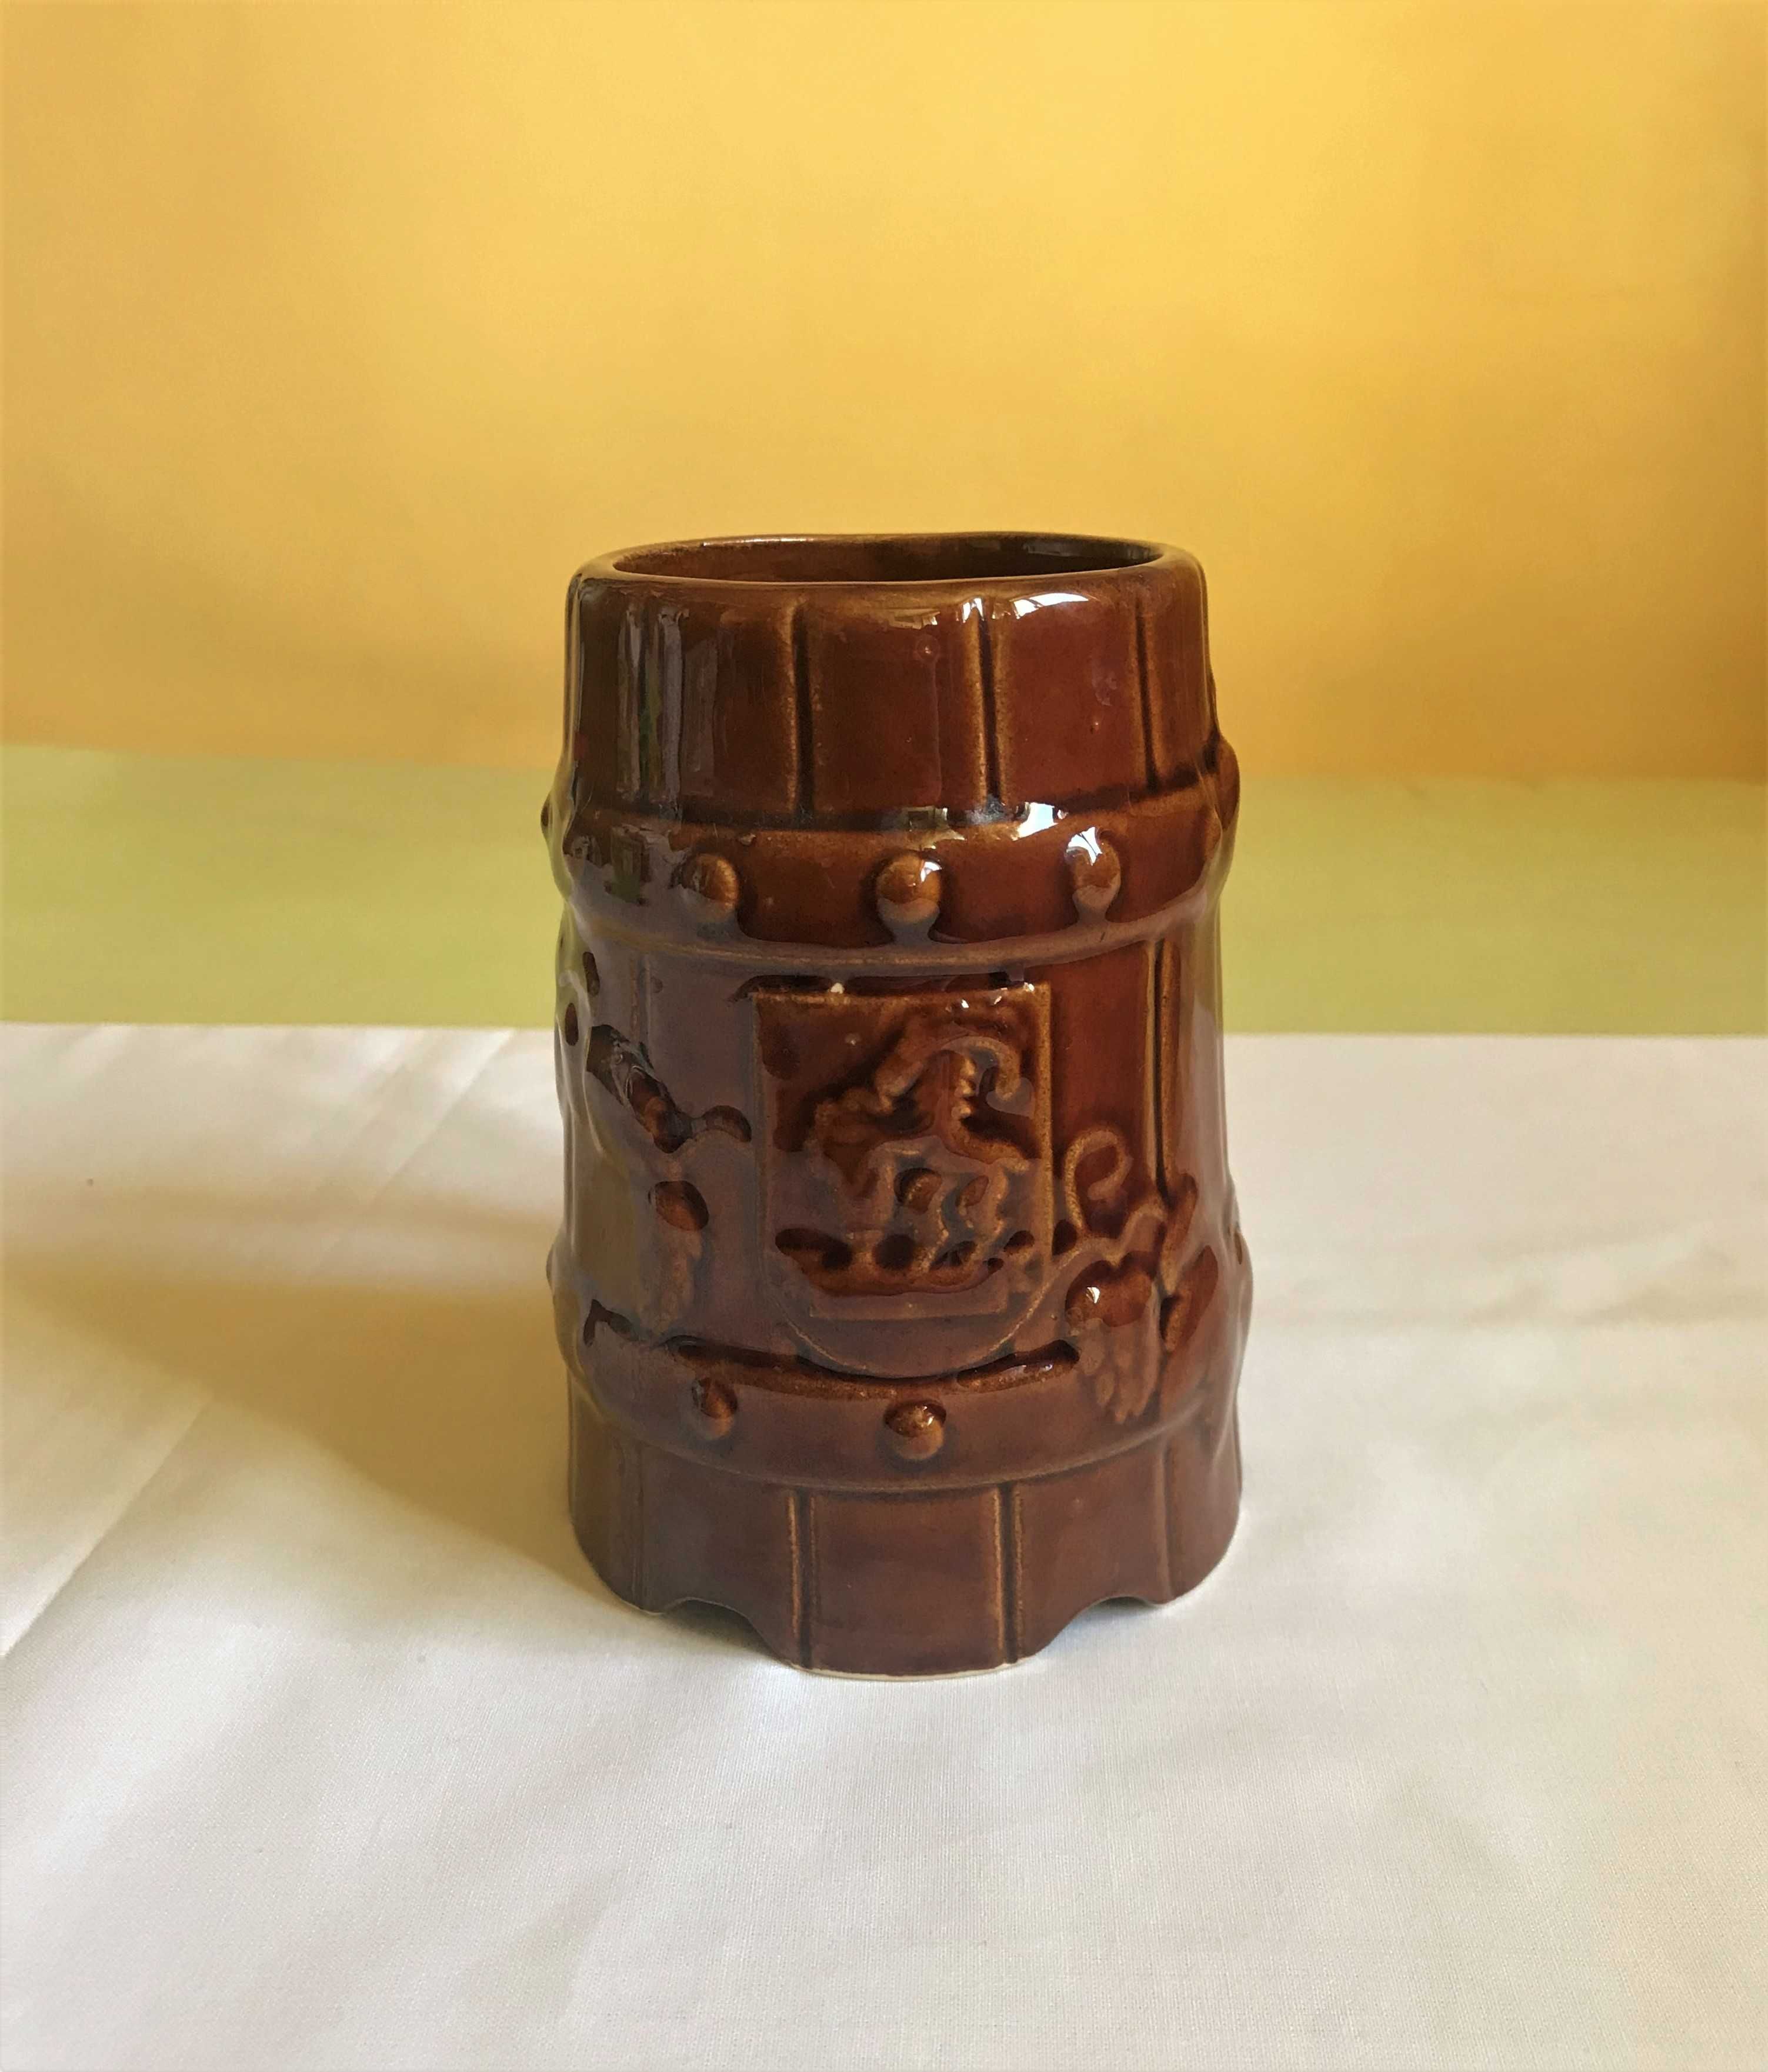 kufel prl herb lublina vintage ceramika piwo brązowy 0,5 l